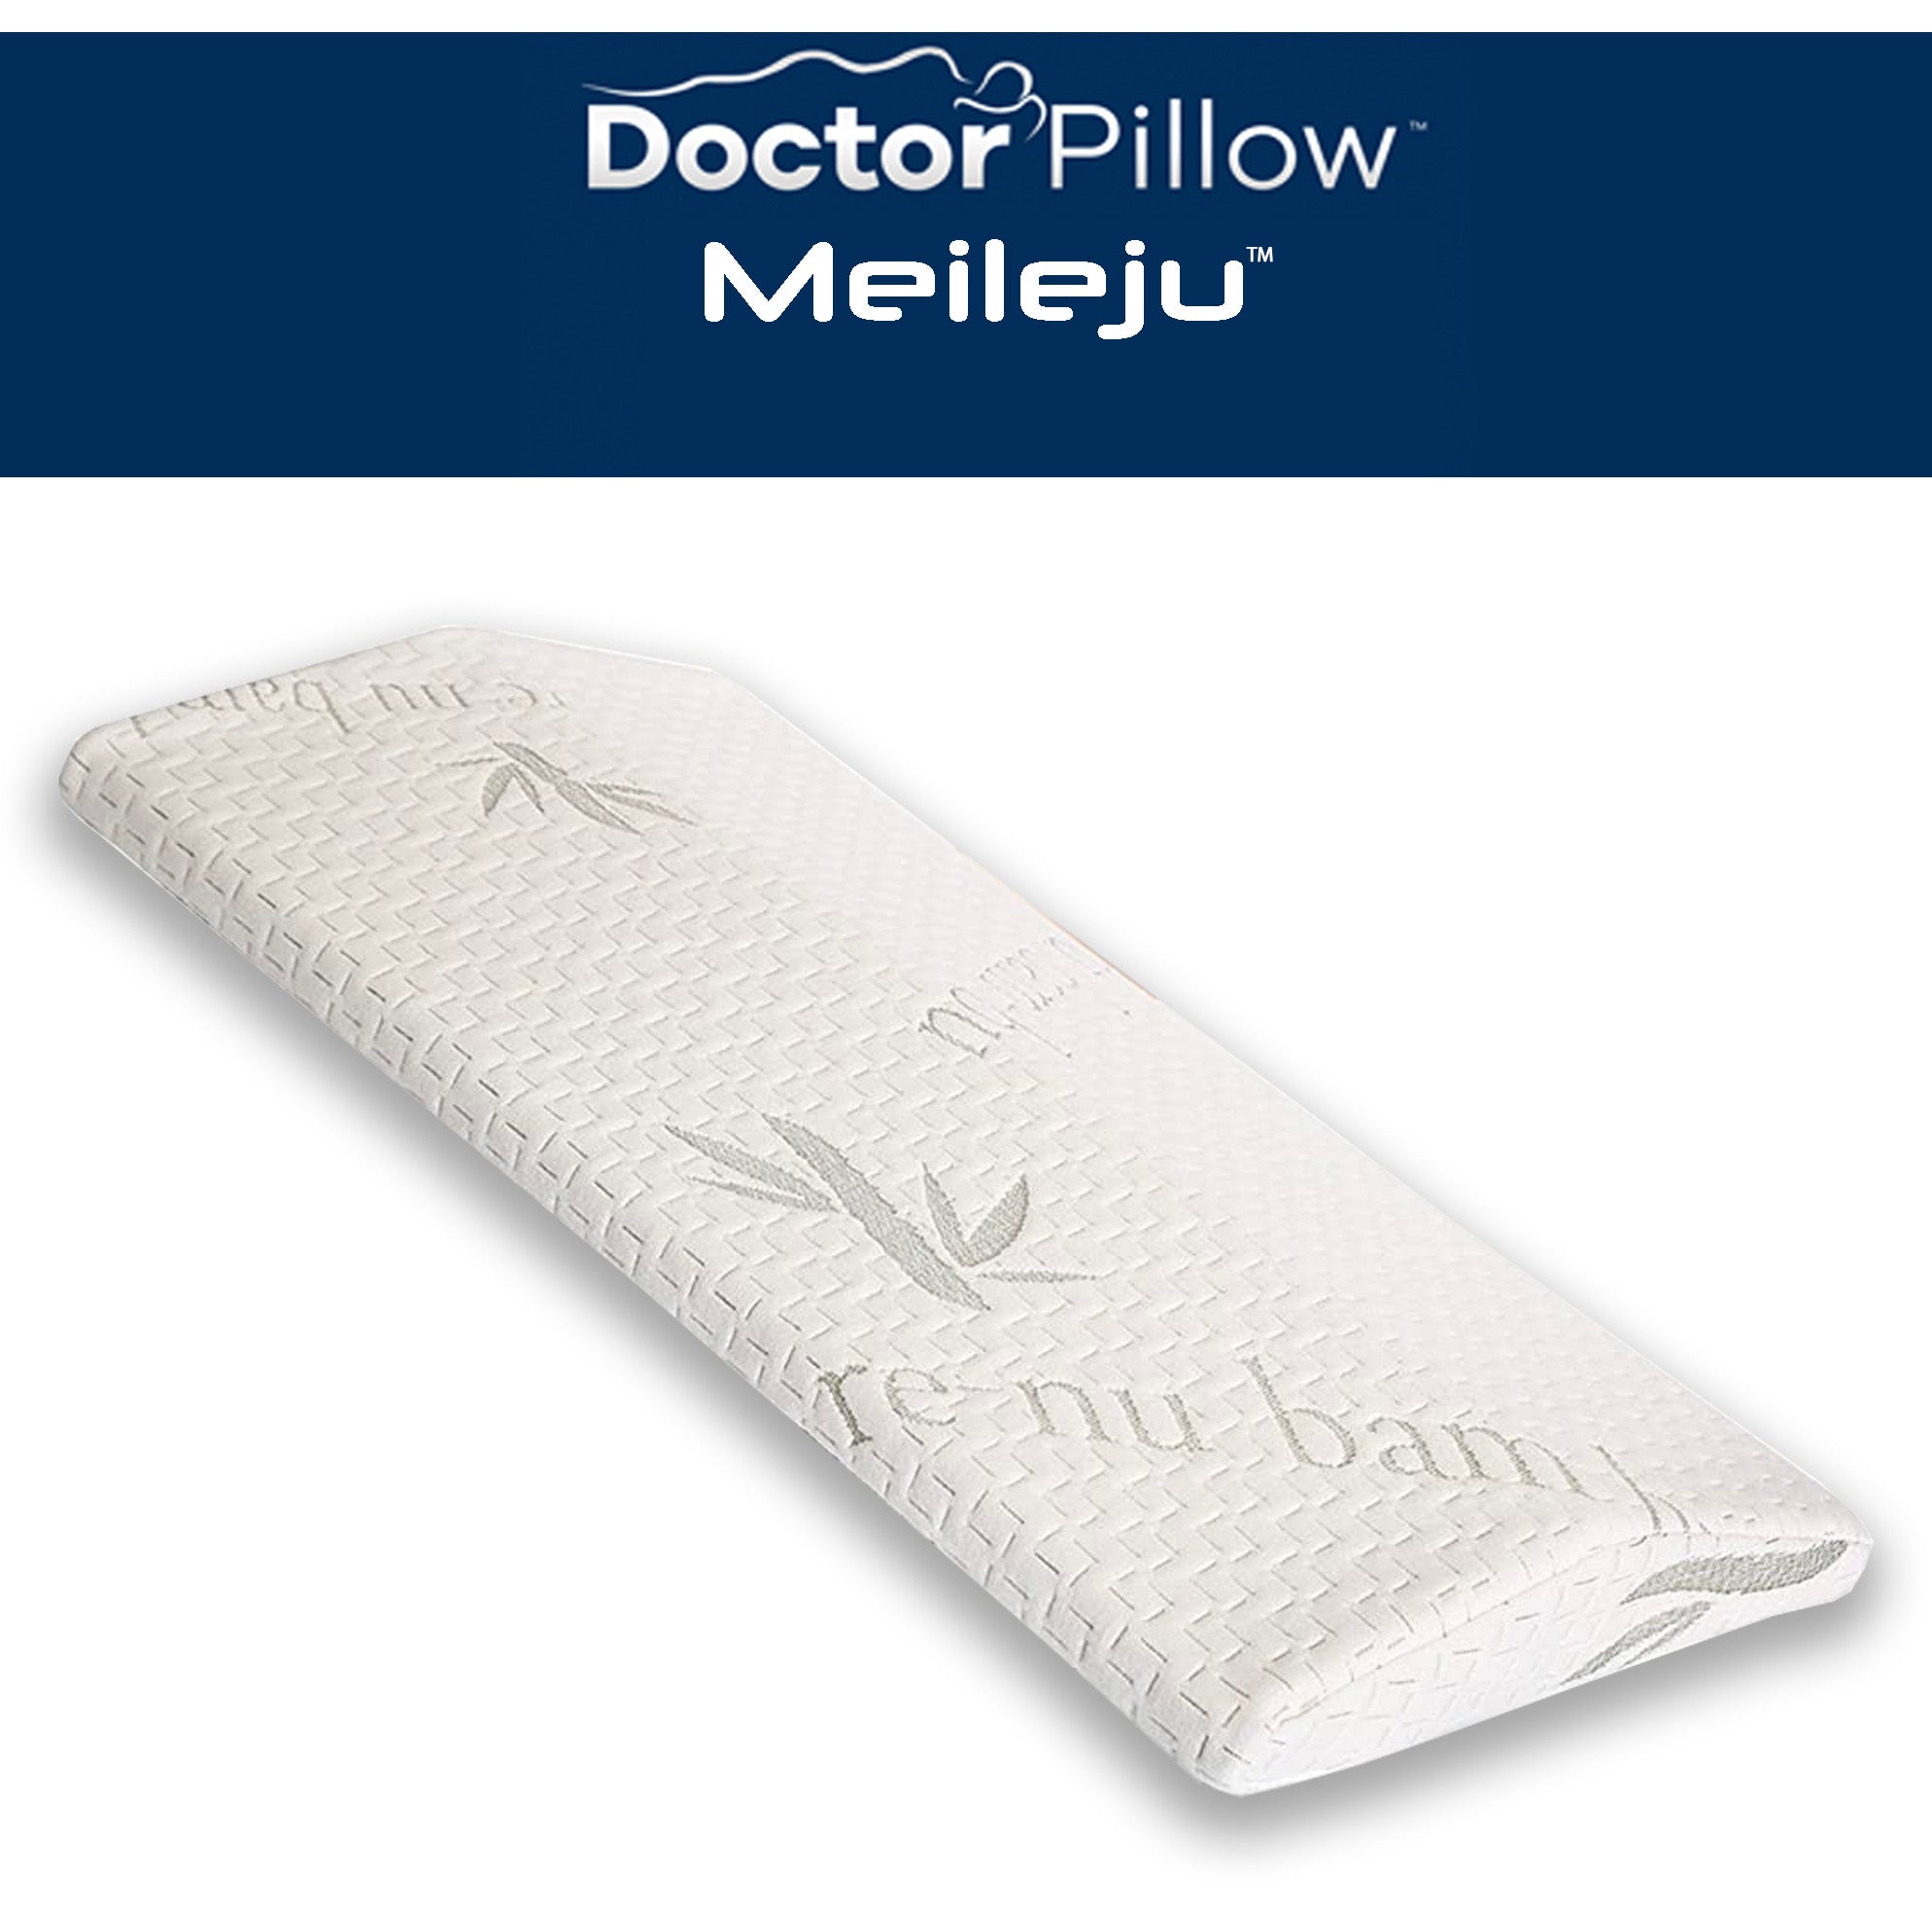 Doctor Pillow Meileju Pillow